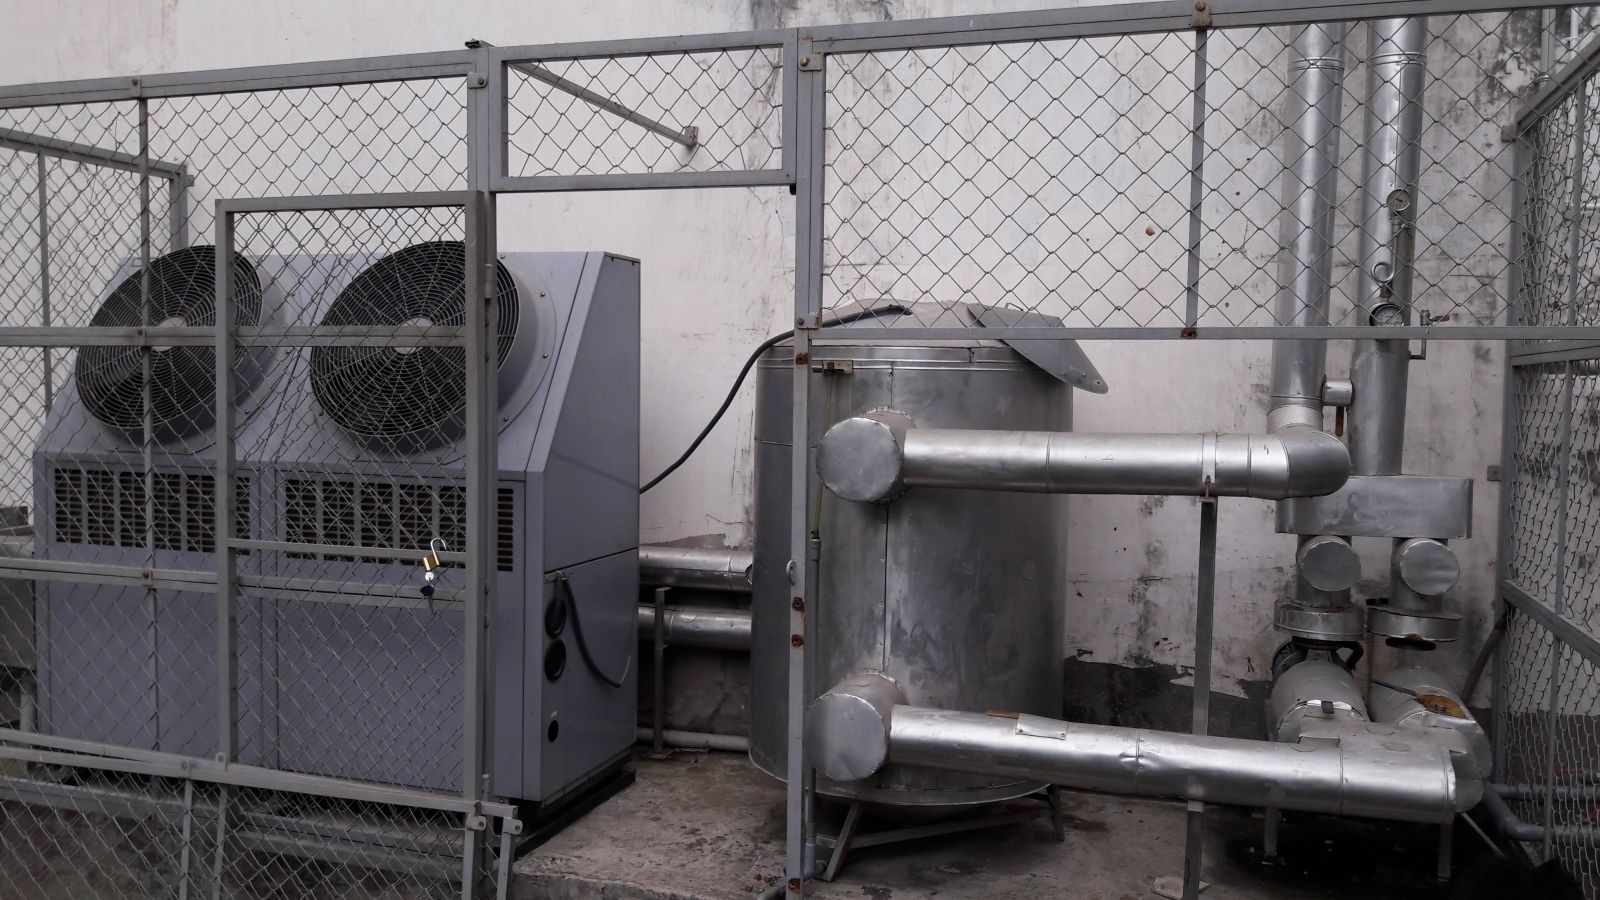 Hệ thống giải giải nhiệt cho máy cộng hưởng từ MRI